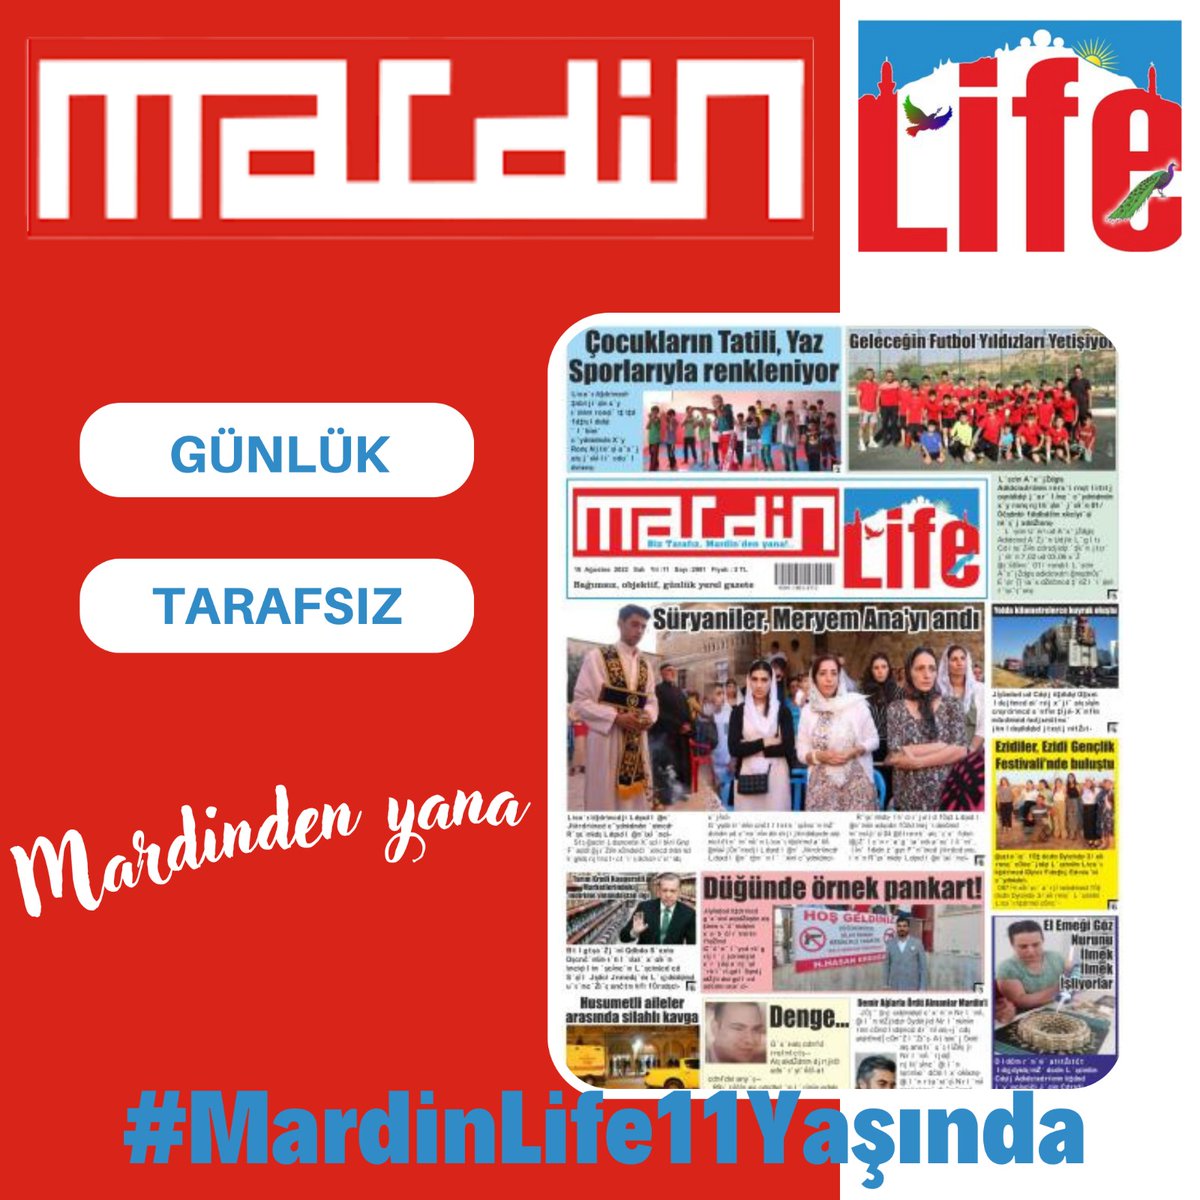 Mardin in dünyaya açılan penceresi #MardinLife11Yaşında nice onbir yıllara